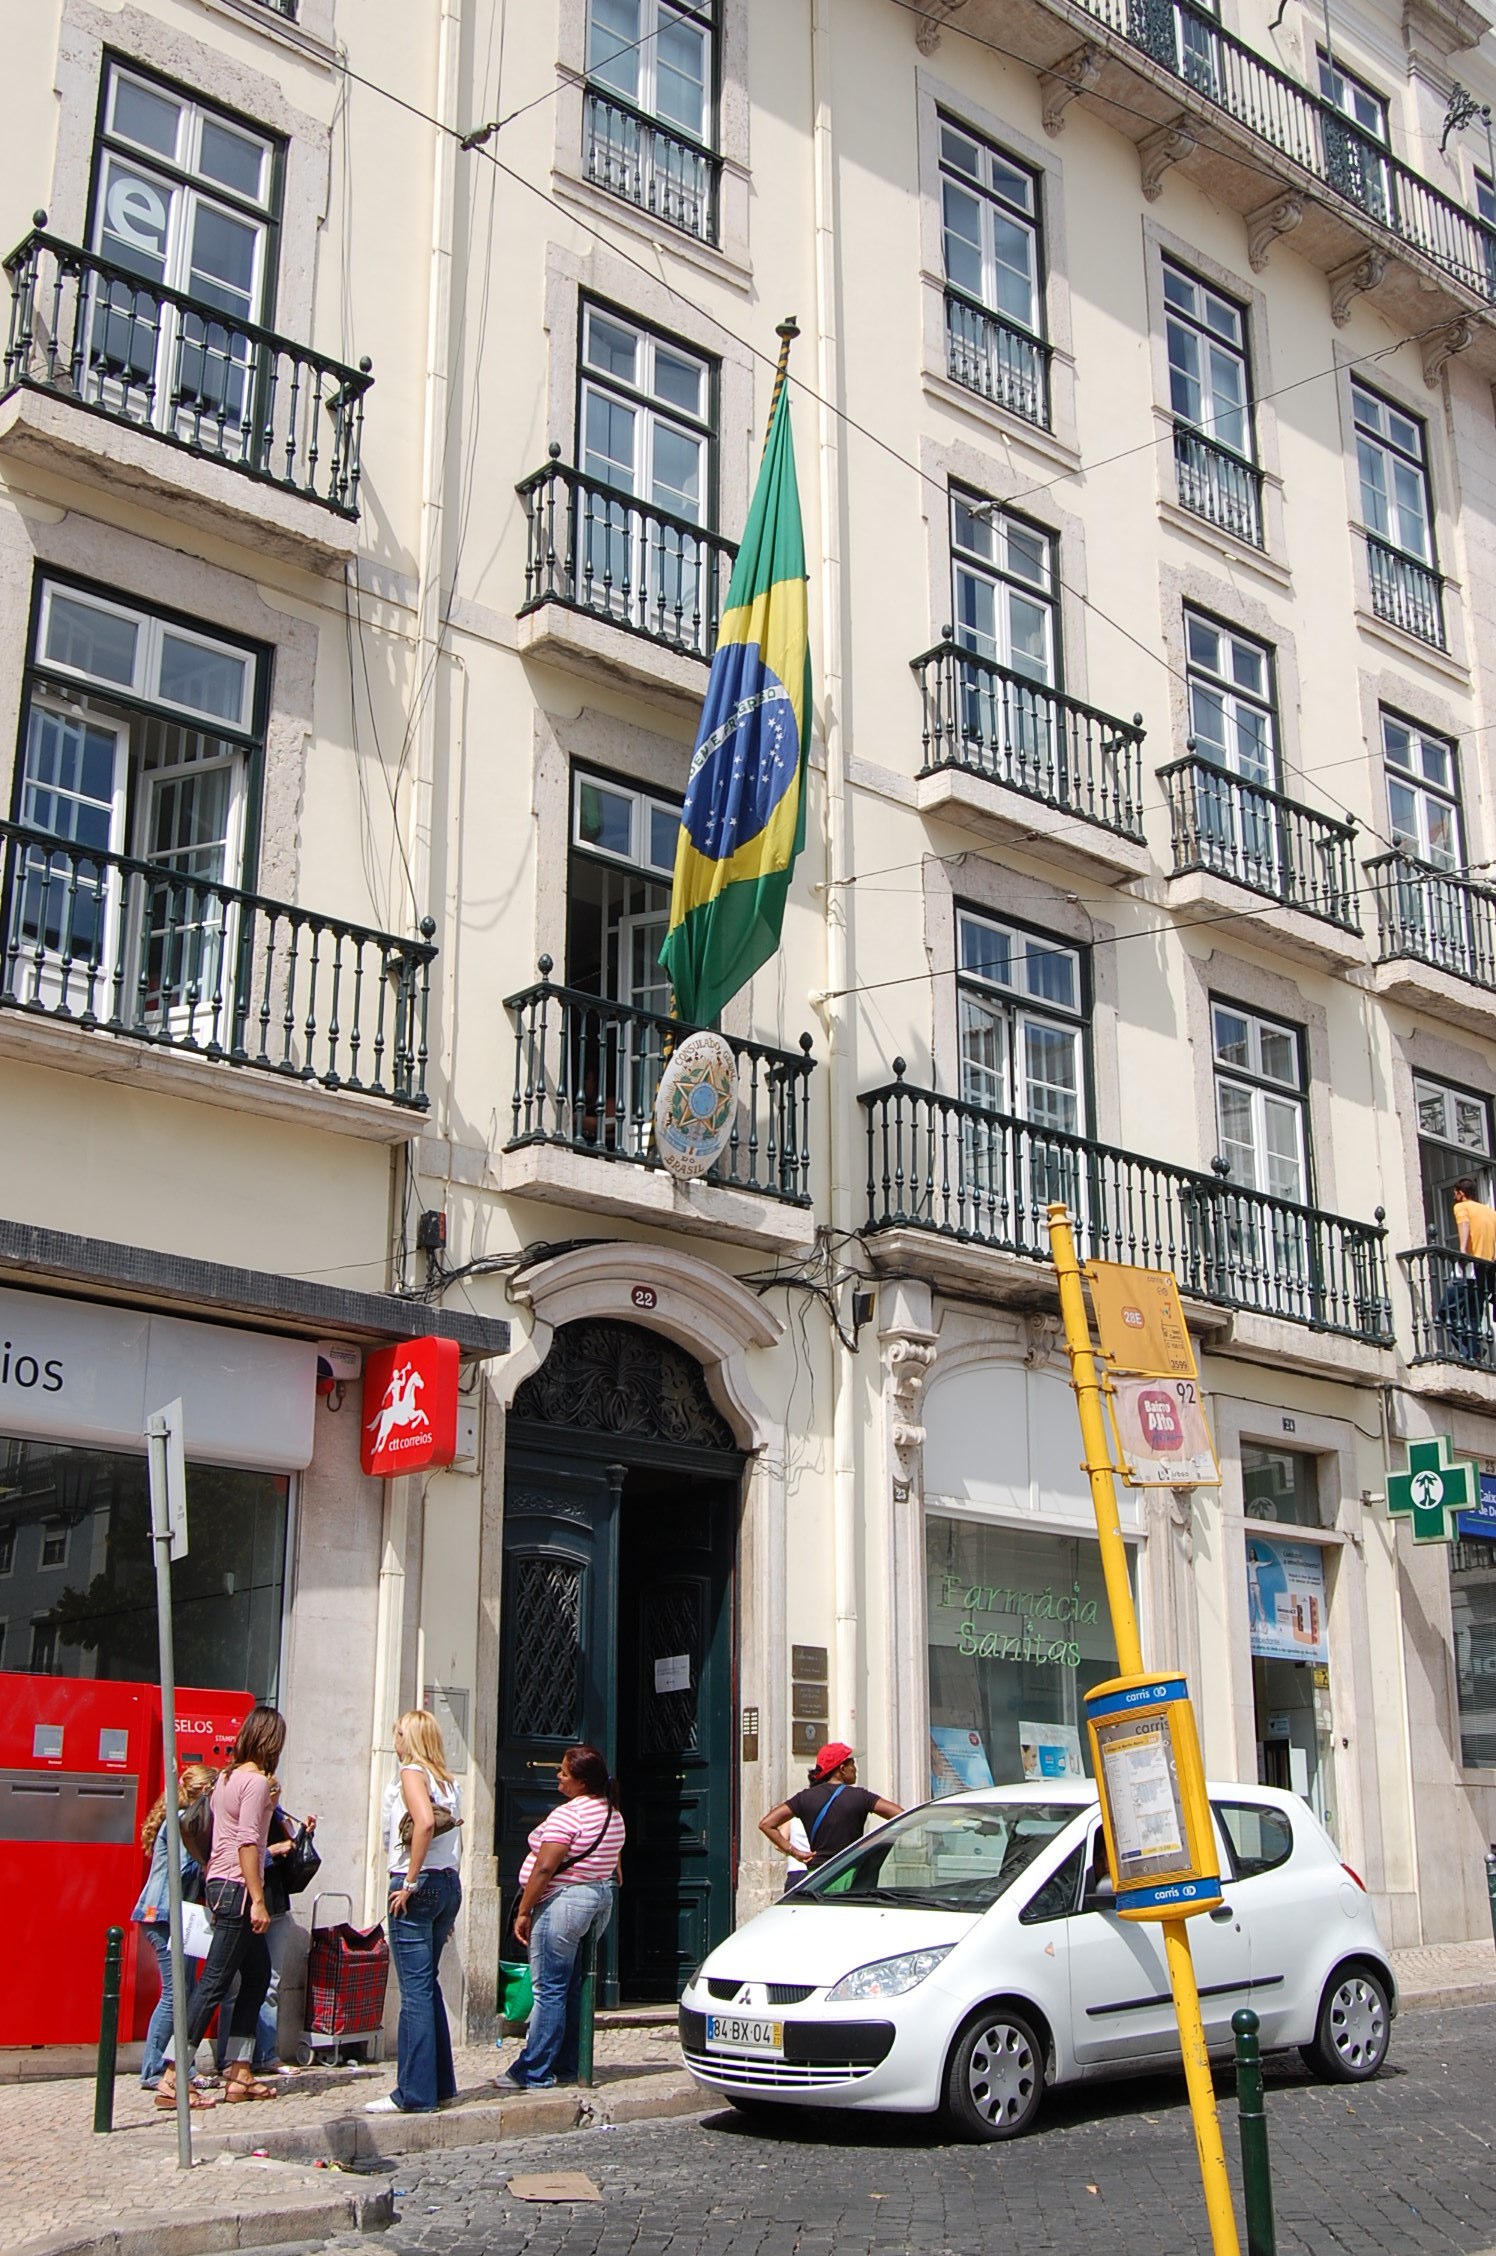 Consulado-Geral do Brasil em Londres